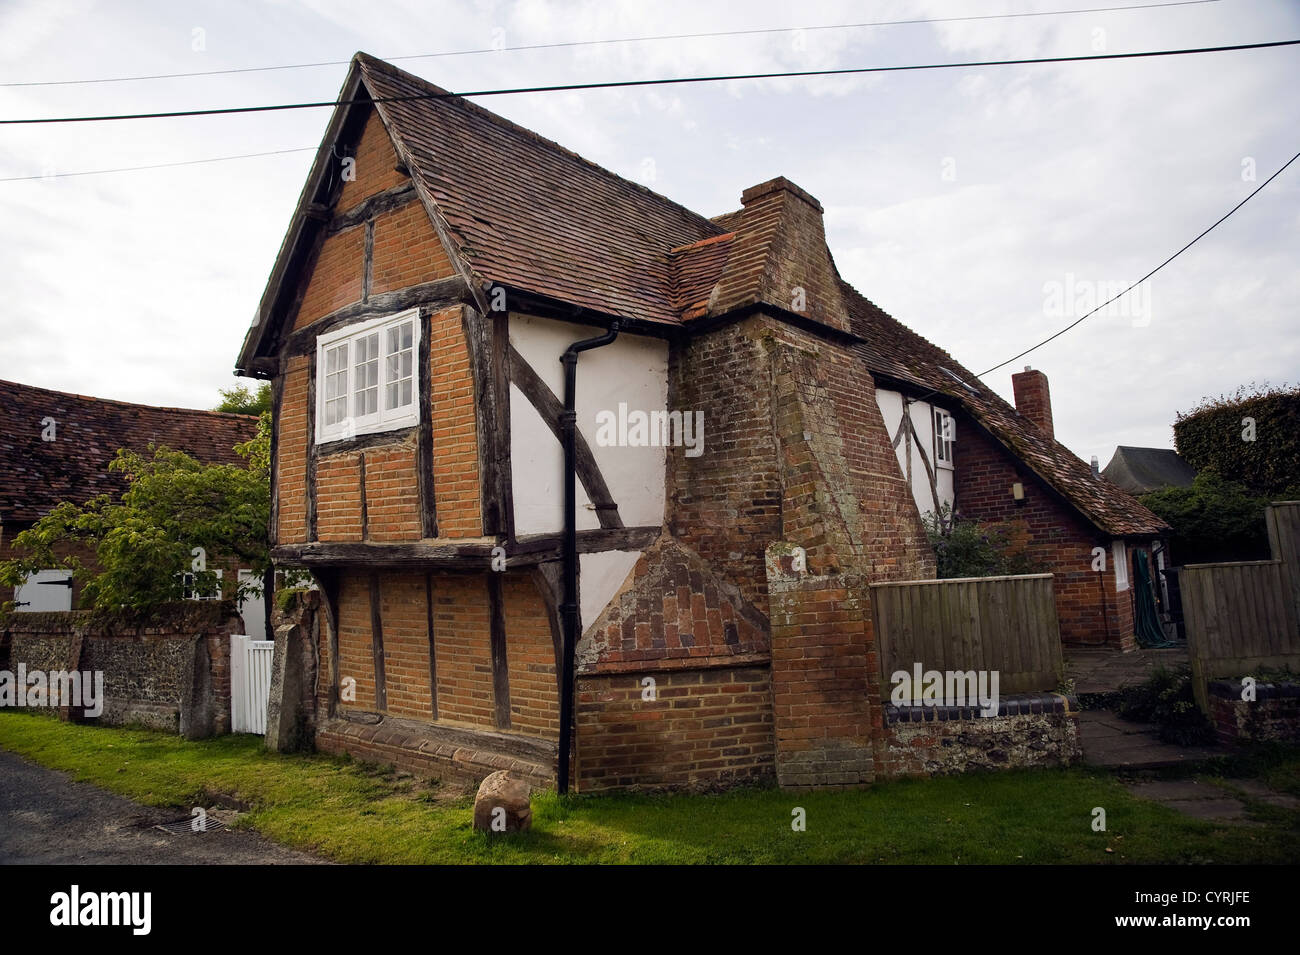 Vieille maison du 17ème siècle anglais dans le sud de l'Oxfordshire, UK, Stoke Banque D'Images